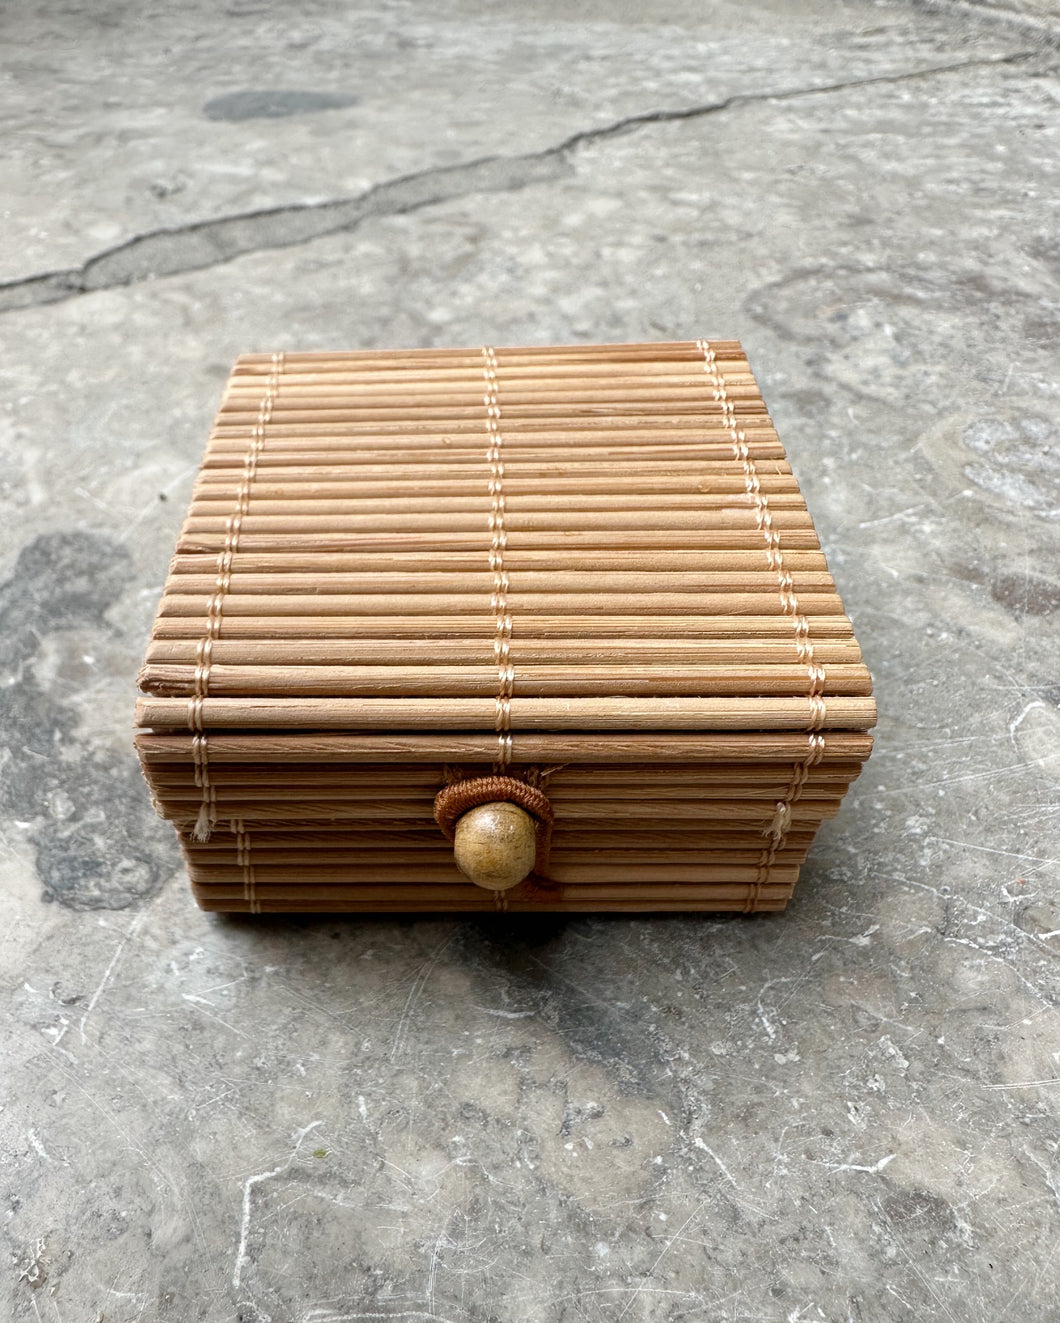 Gift box/storage box, bamboo